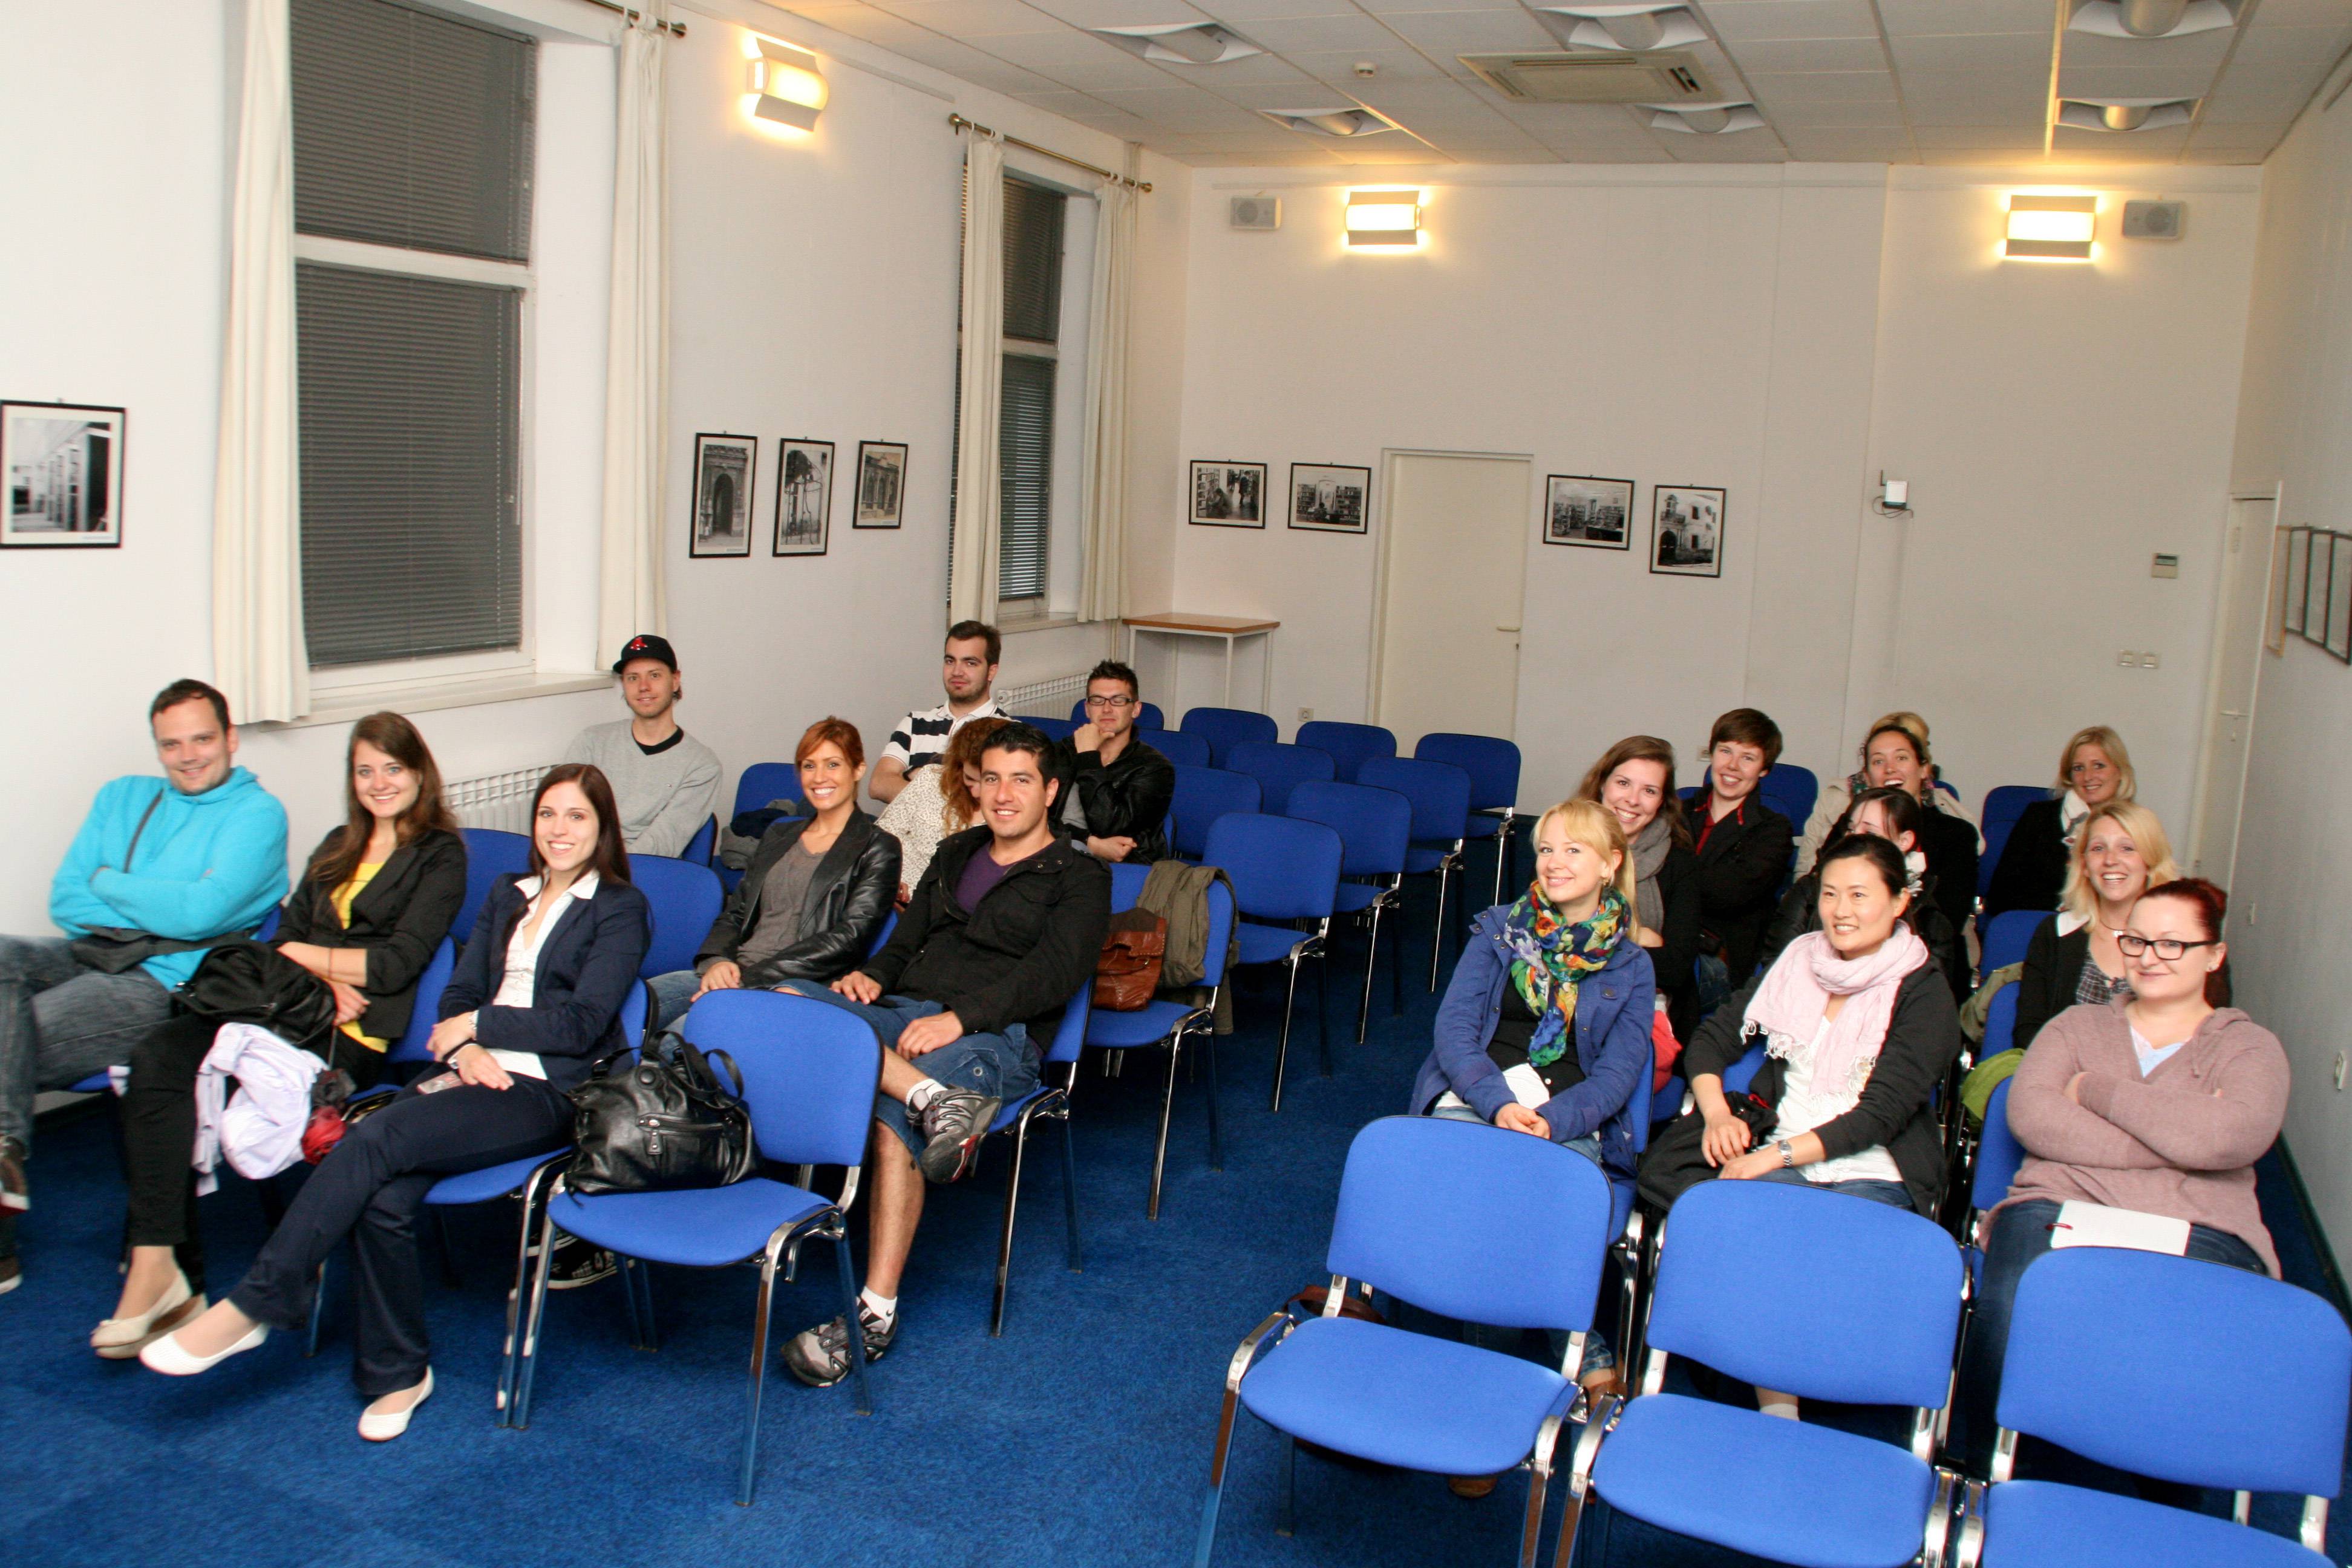 Posjet studenata međunarodnog menadžmenta (Klagenfurt) 